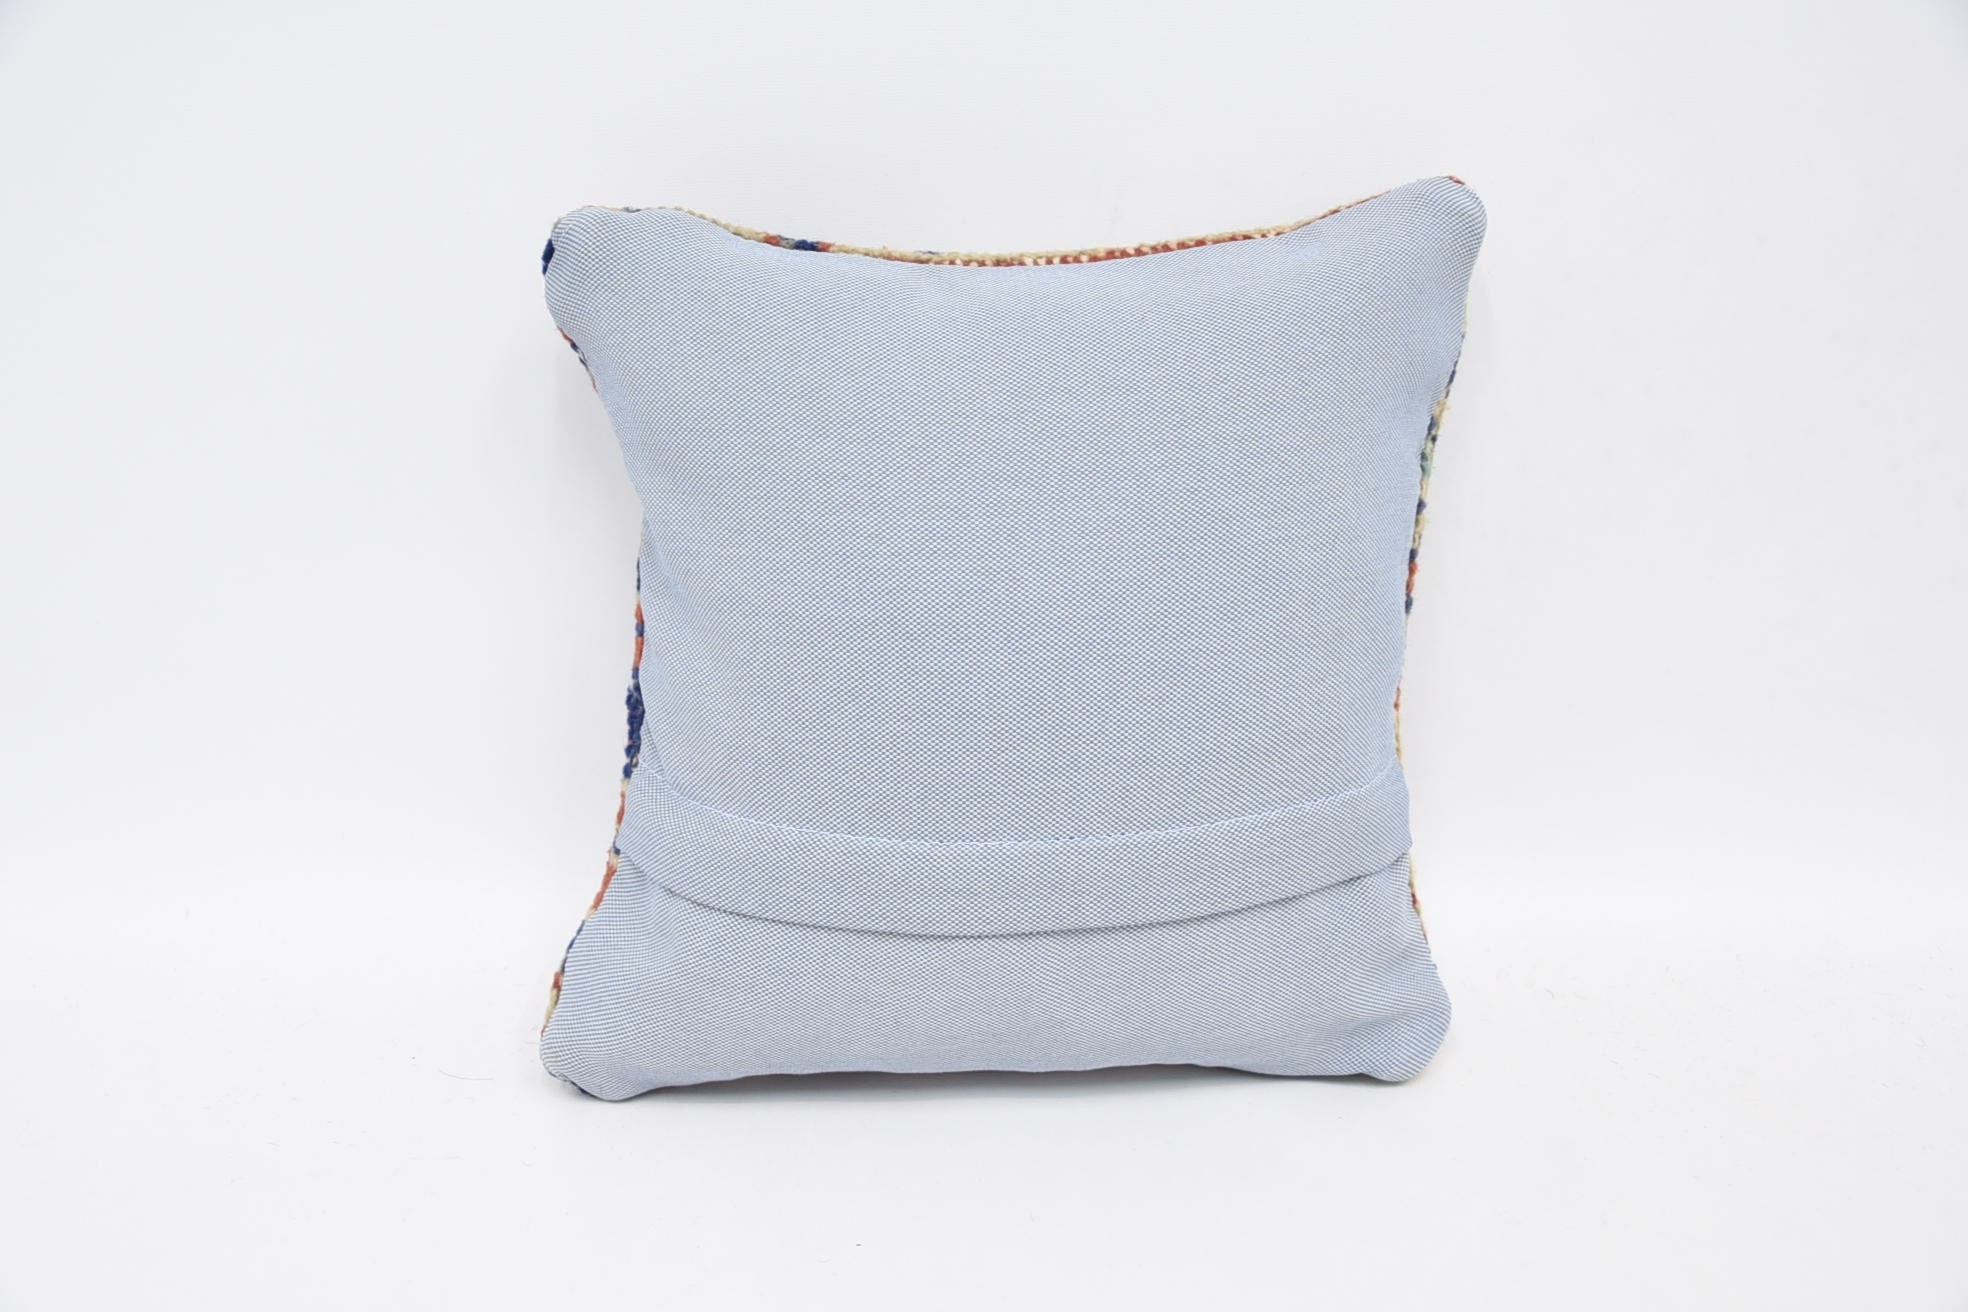 Handmade Kilim Cushion, 12"x12" Blue Cushion, Antique Pillows, Colorful Pillow, Vintage Pillow, Indoor Cushion Case